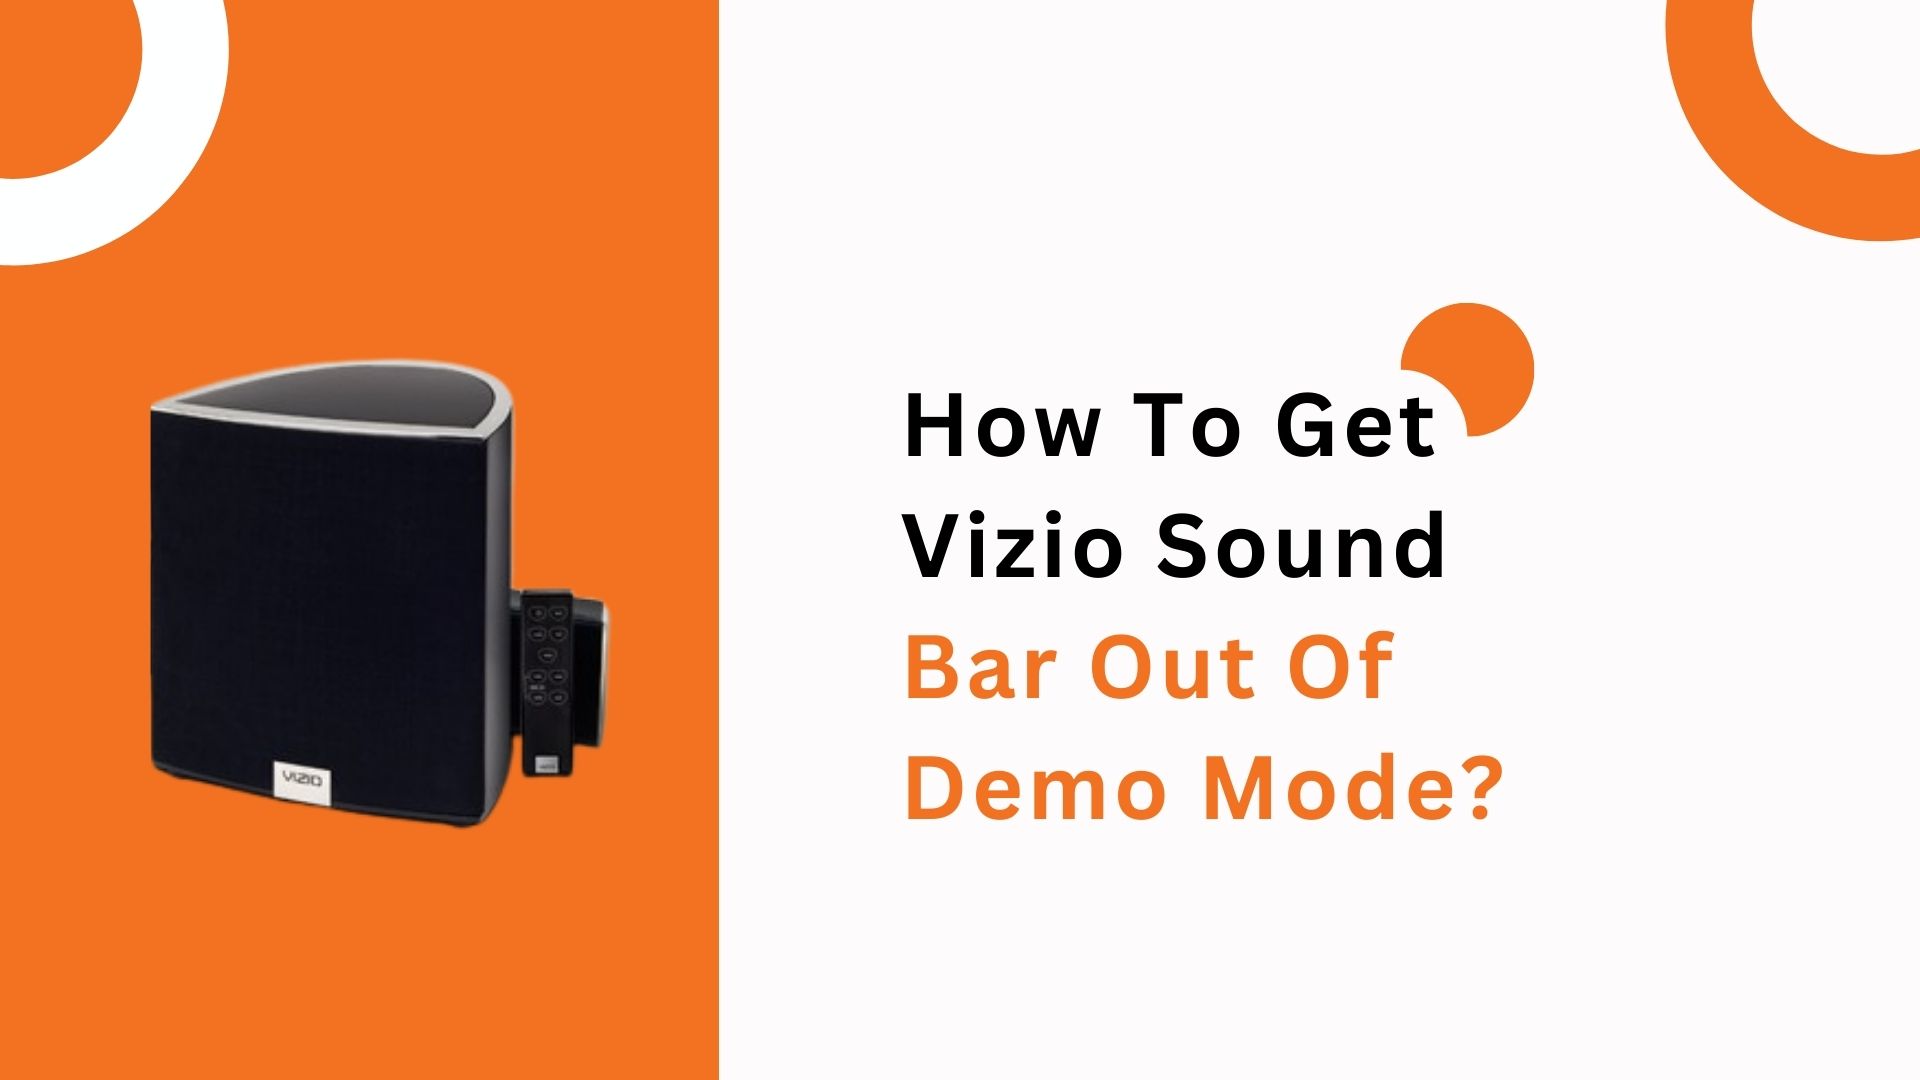 How To Get Vizio Sound Bar Out Of Demo Mode